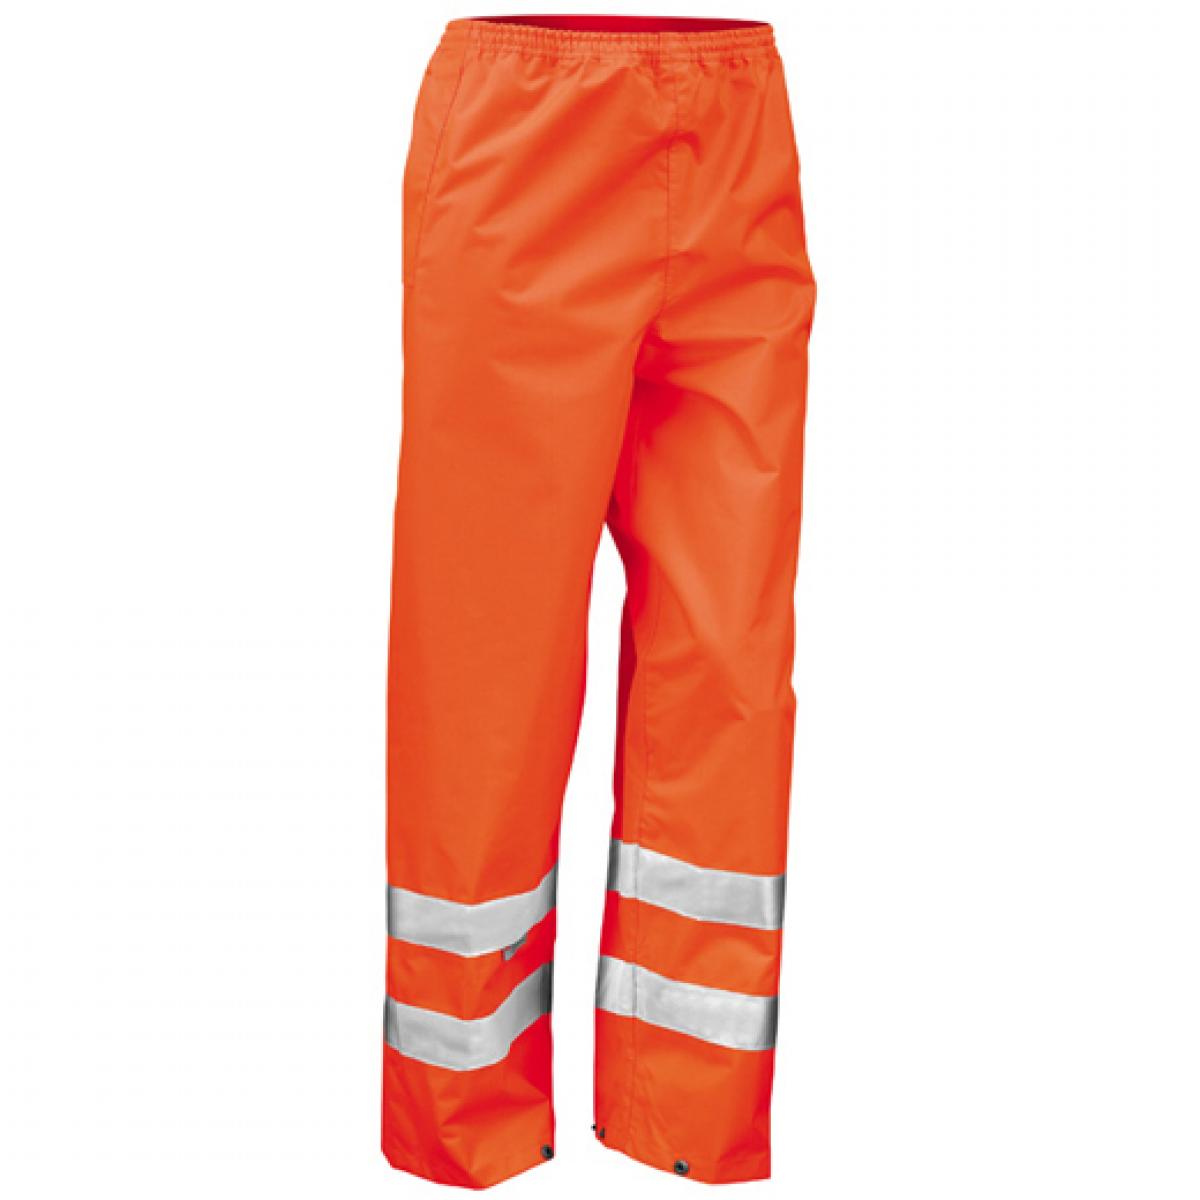 Hersteller: Result Herstellernummer: R022X Artikelbezeichnung: Herren Safety Hi-Viz Trouser / ISOEN20471:2013 Farbe: Fluorescent Orange